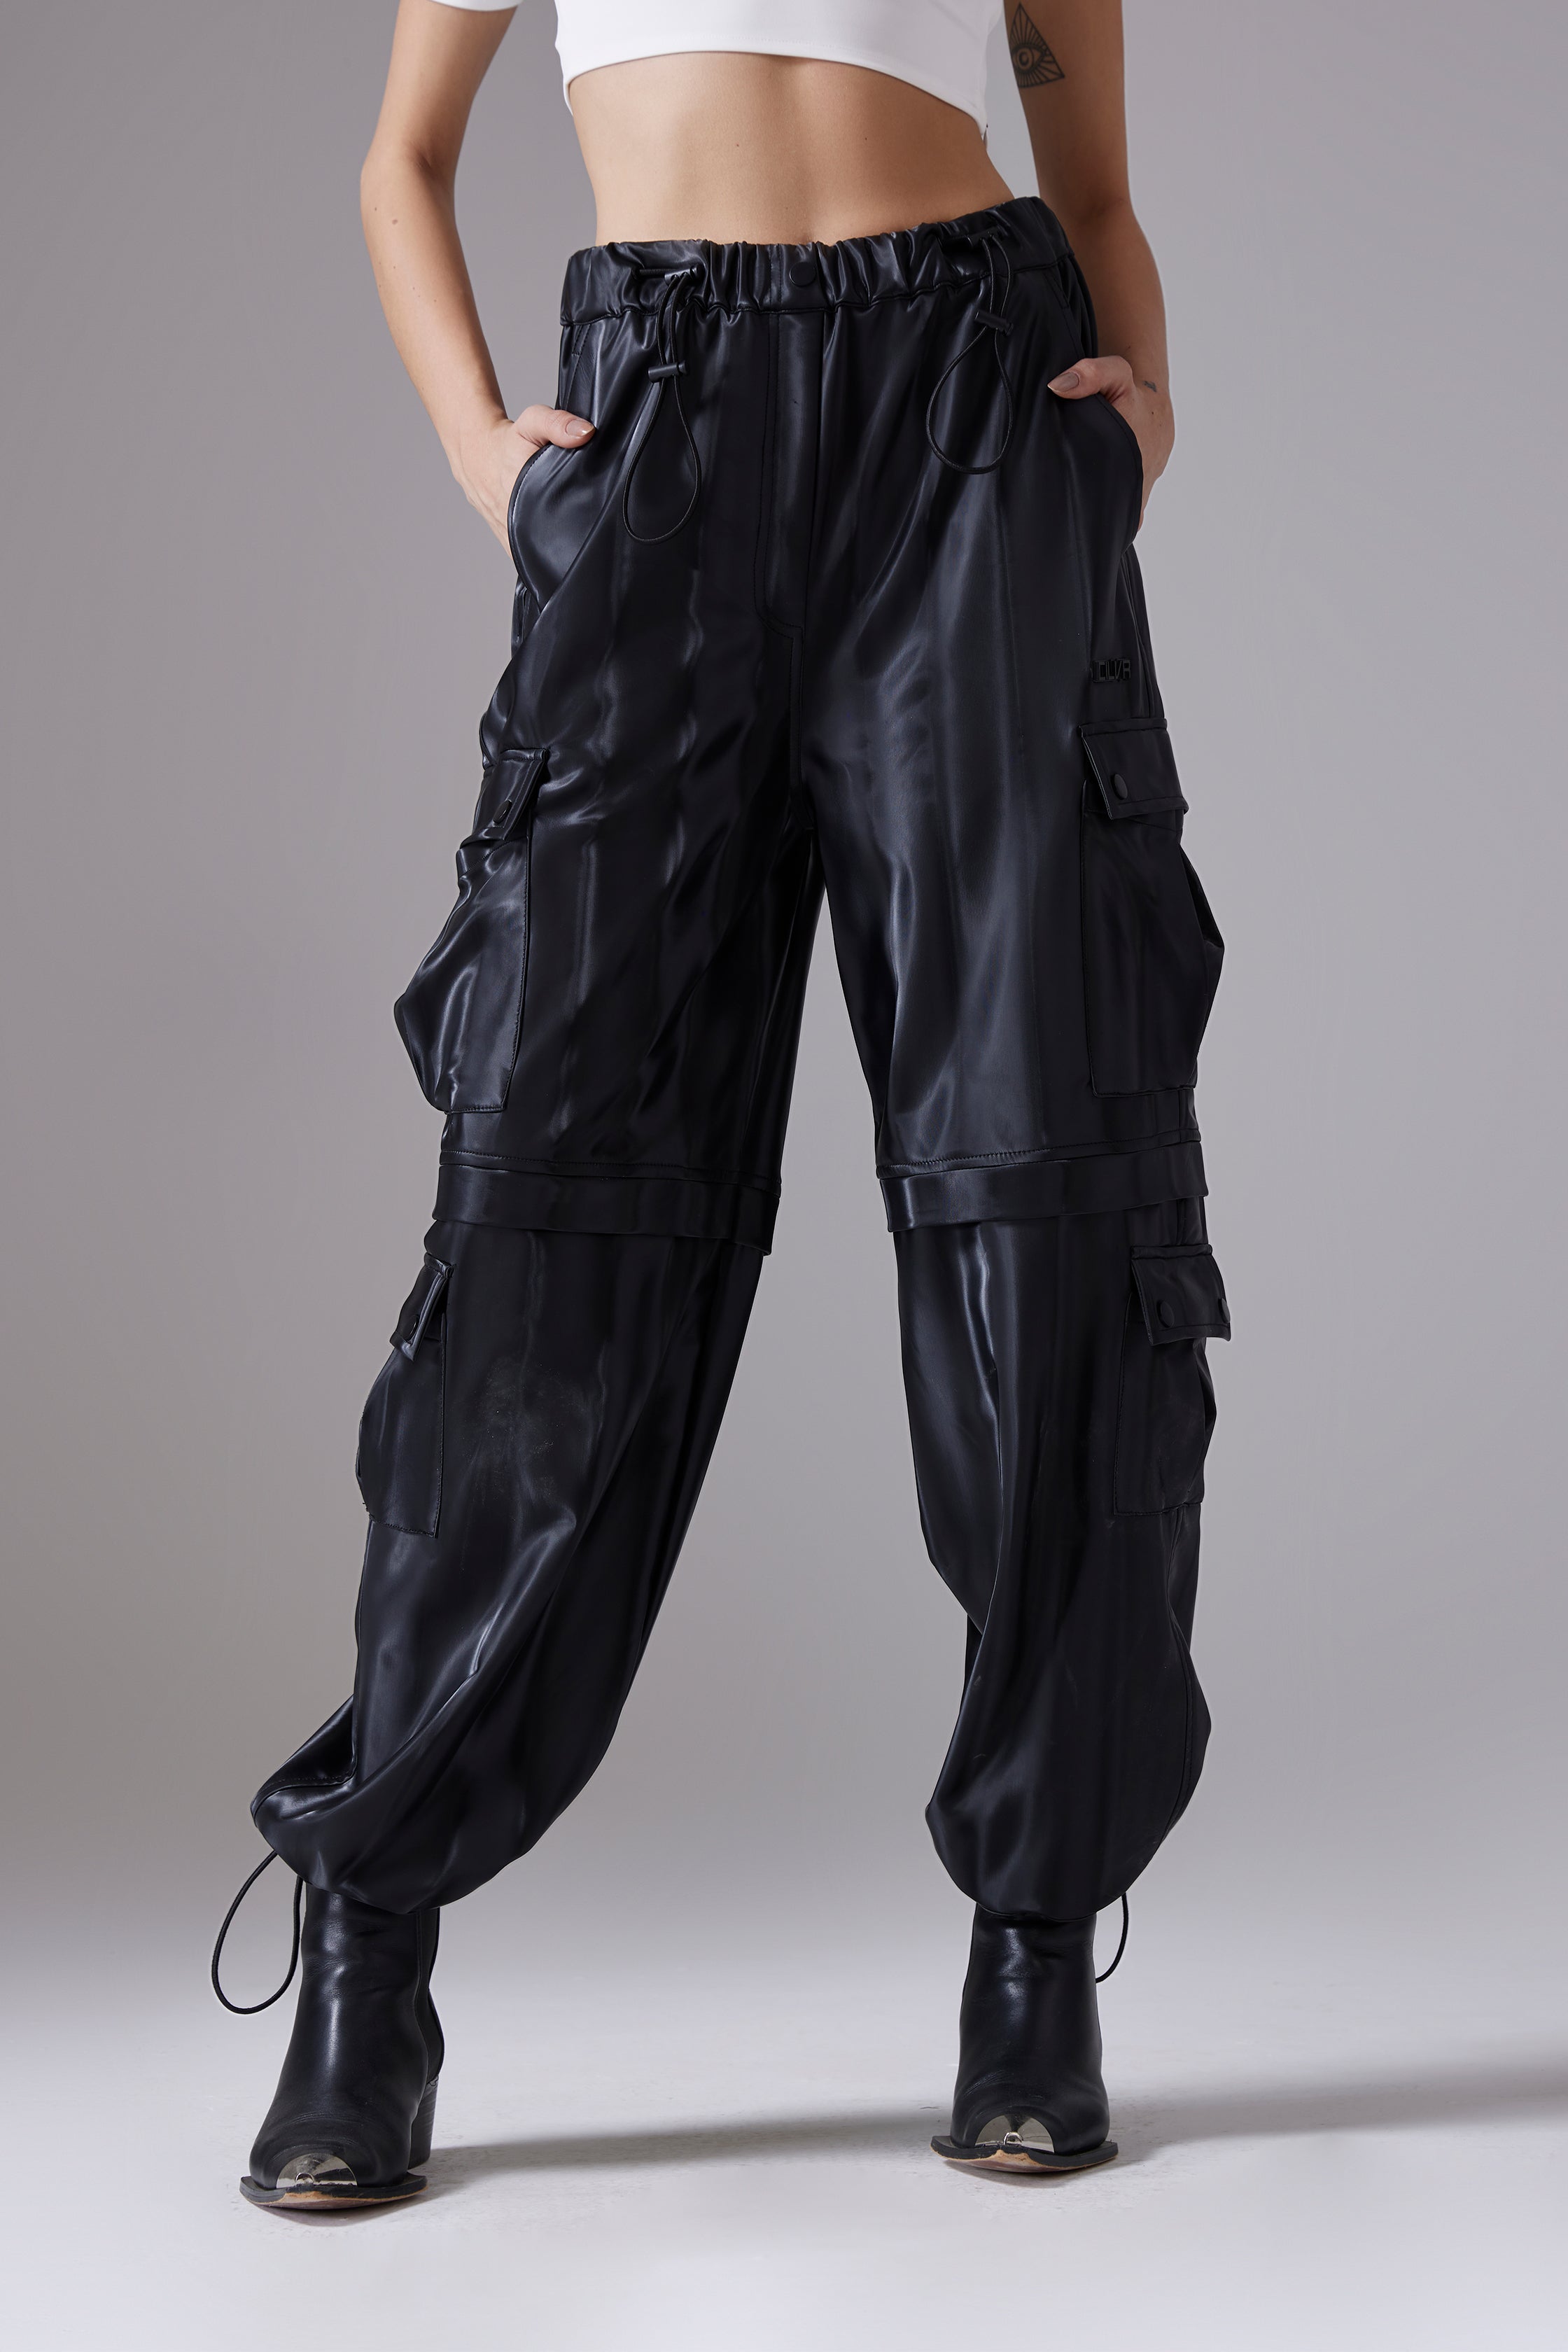 Wesley Leather Cargo Pants